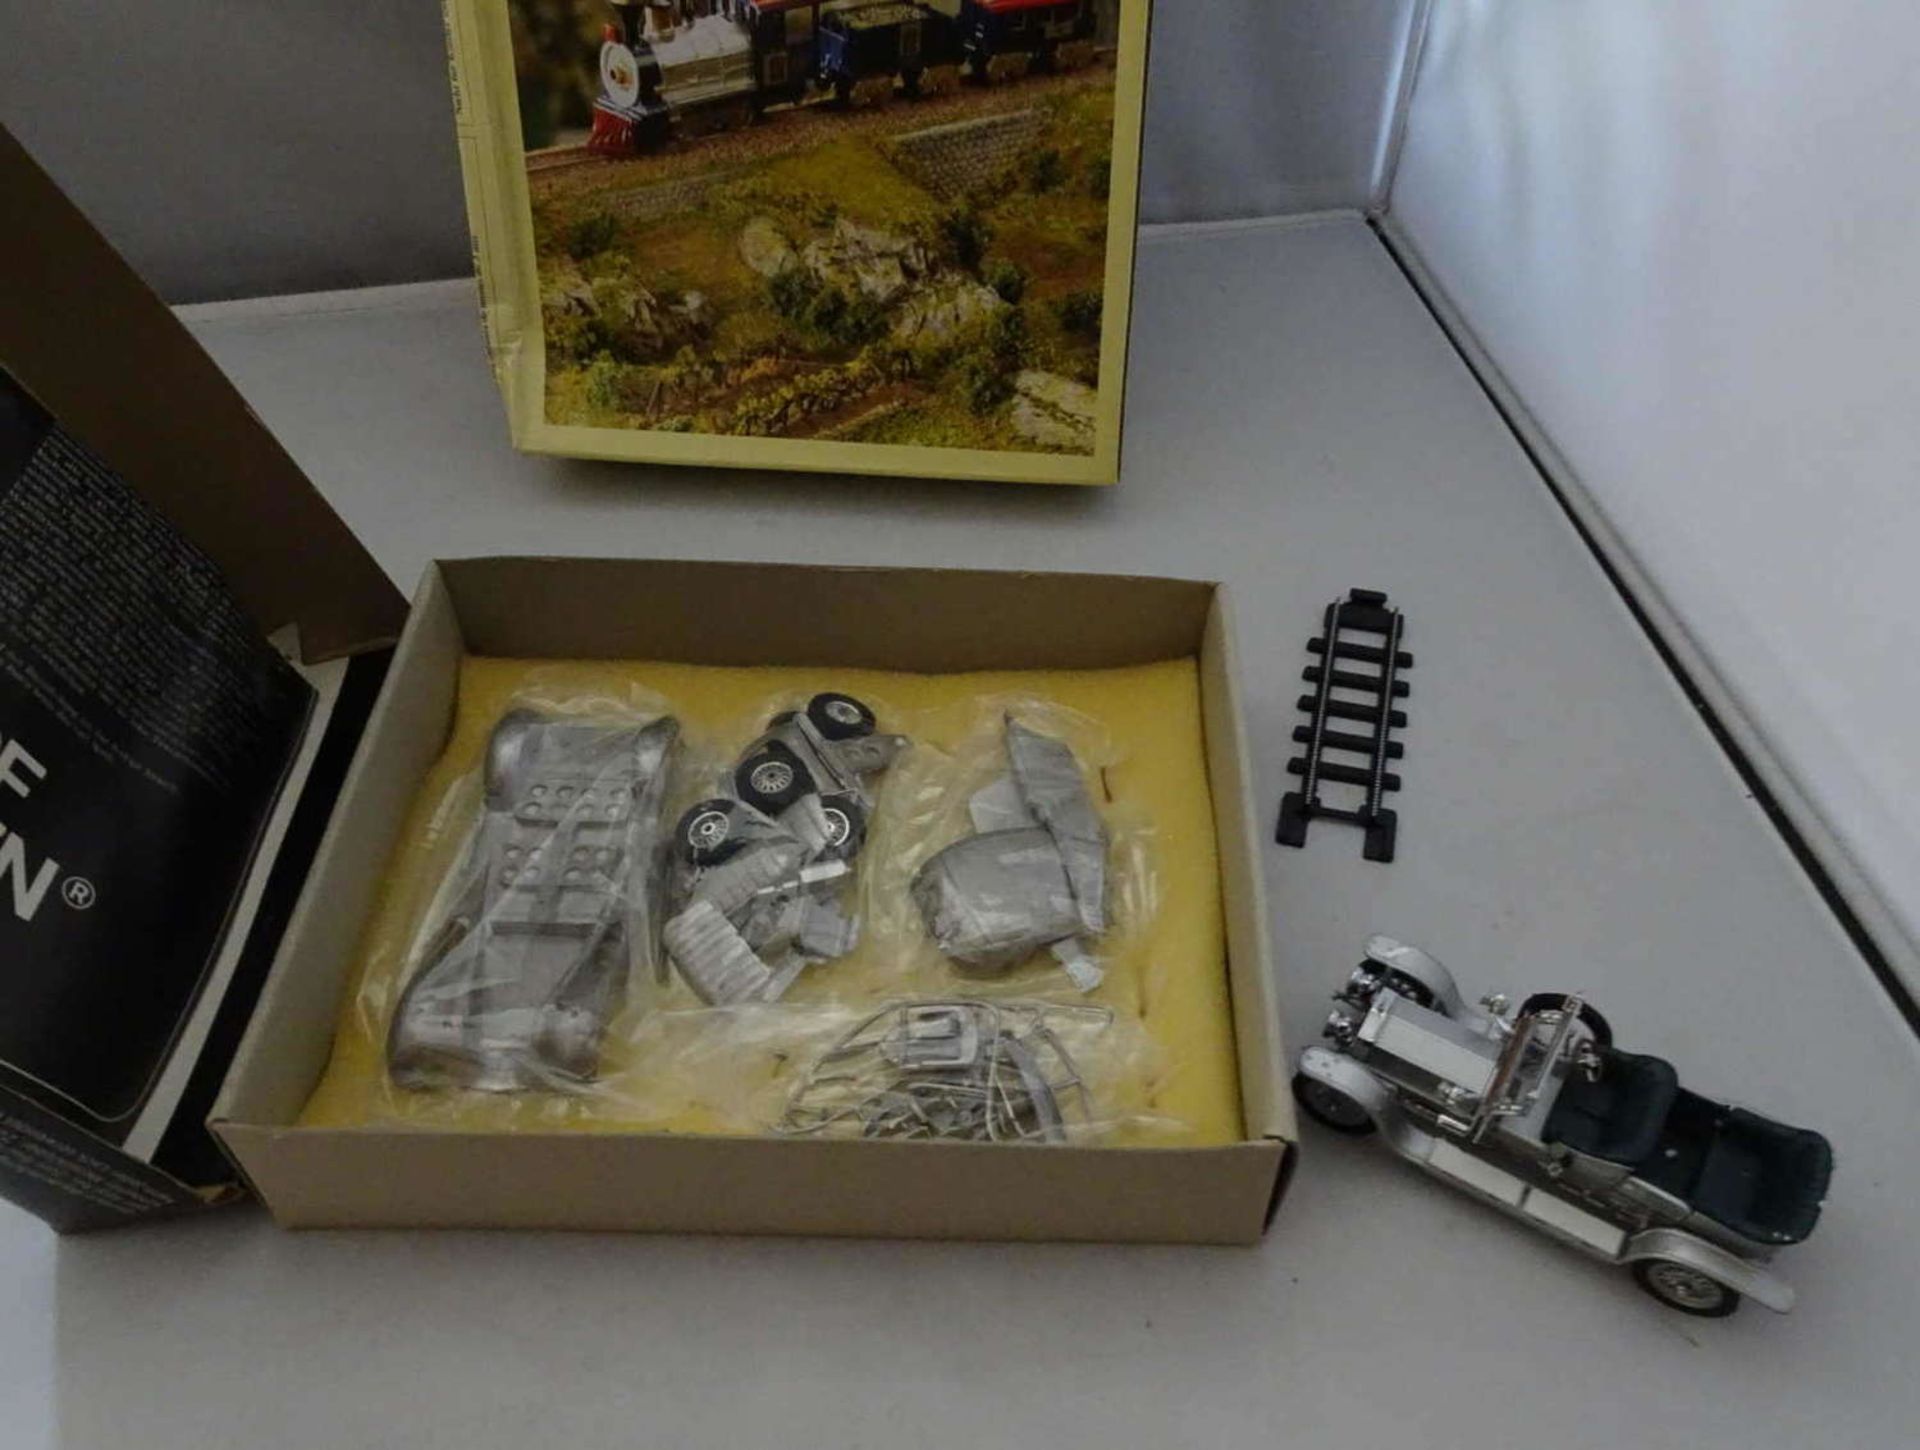 Lot Spielzeugmodelle, dabei Walldorf Miniaturen M 1:43, kleine Eisenbahn mit Schienen, sowie - Bild 2 aus 2